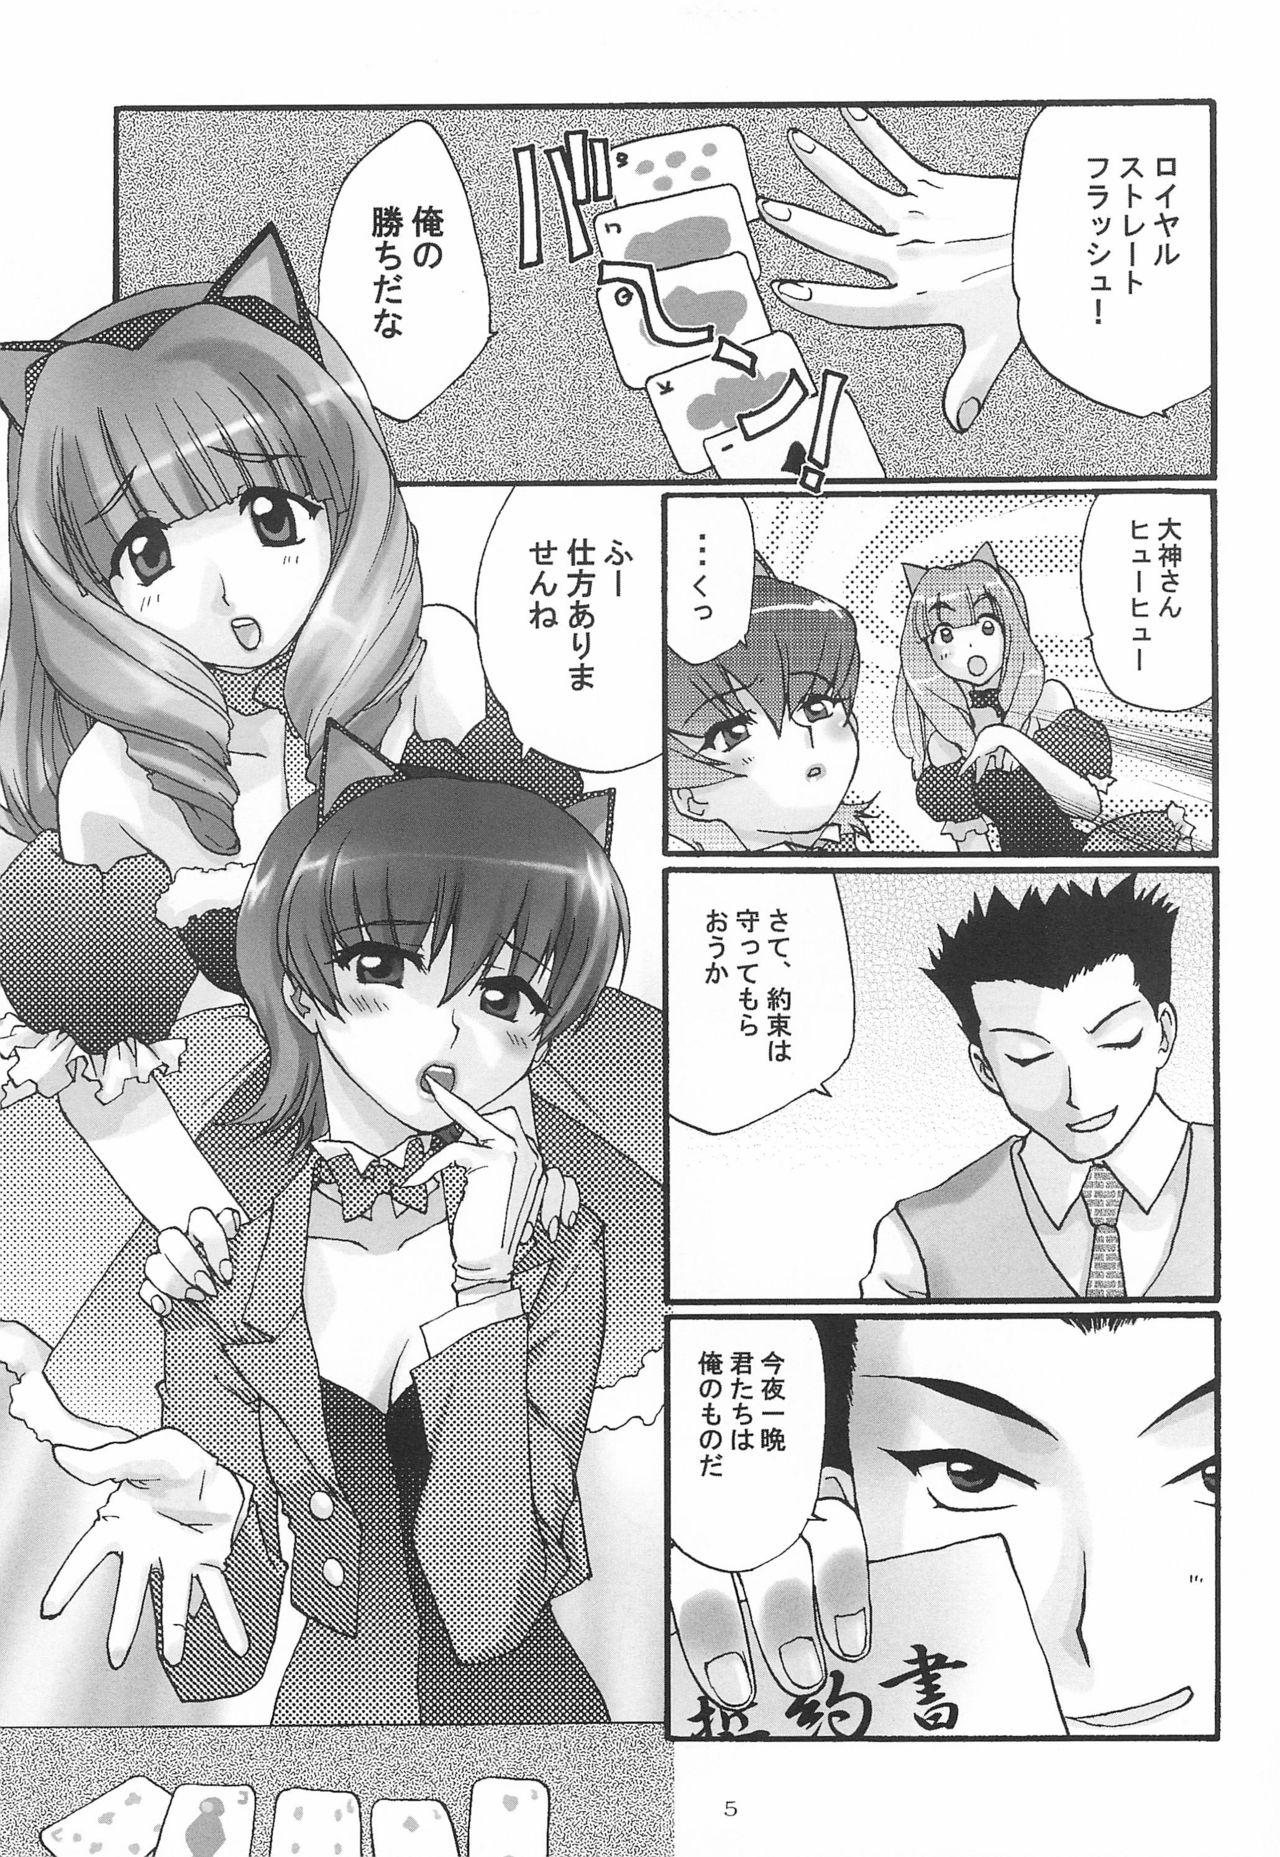 Hard Cock Alleluia - Sakura taisen | sakura wars Amature Sex - Page 7